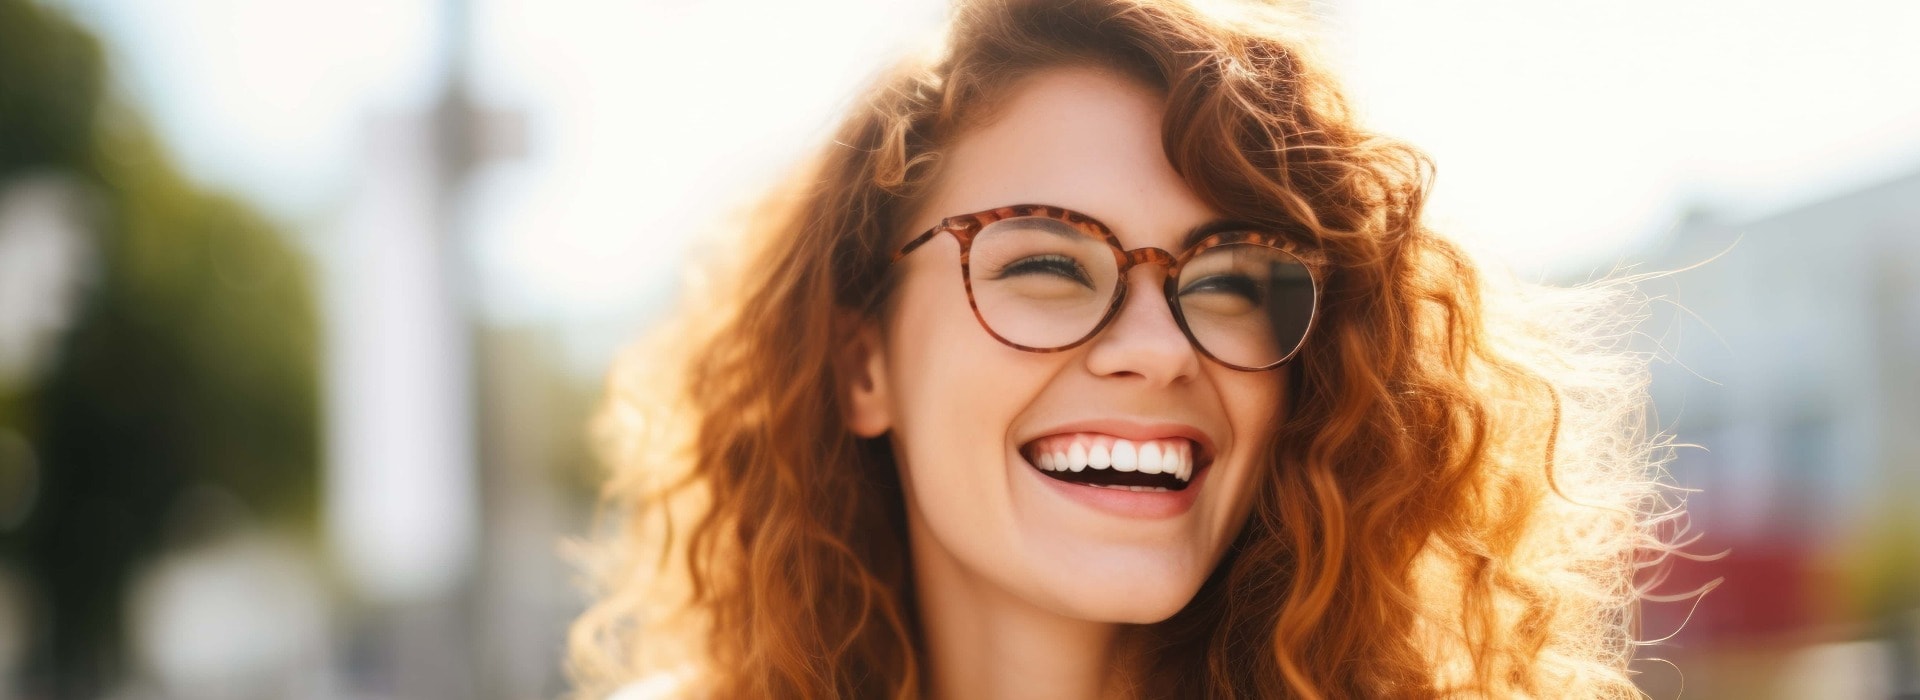 Portrait einer jungen Frau mit Brille, die lächelt